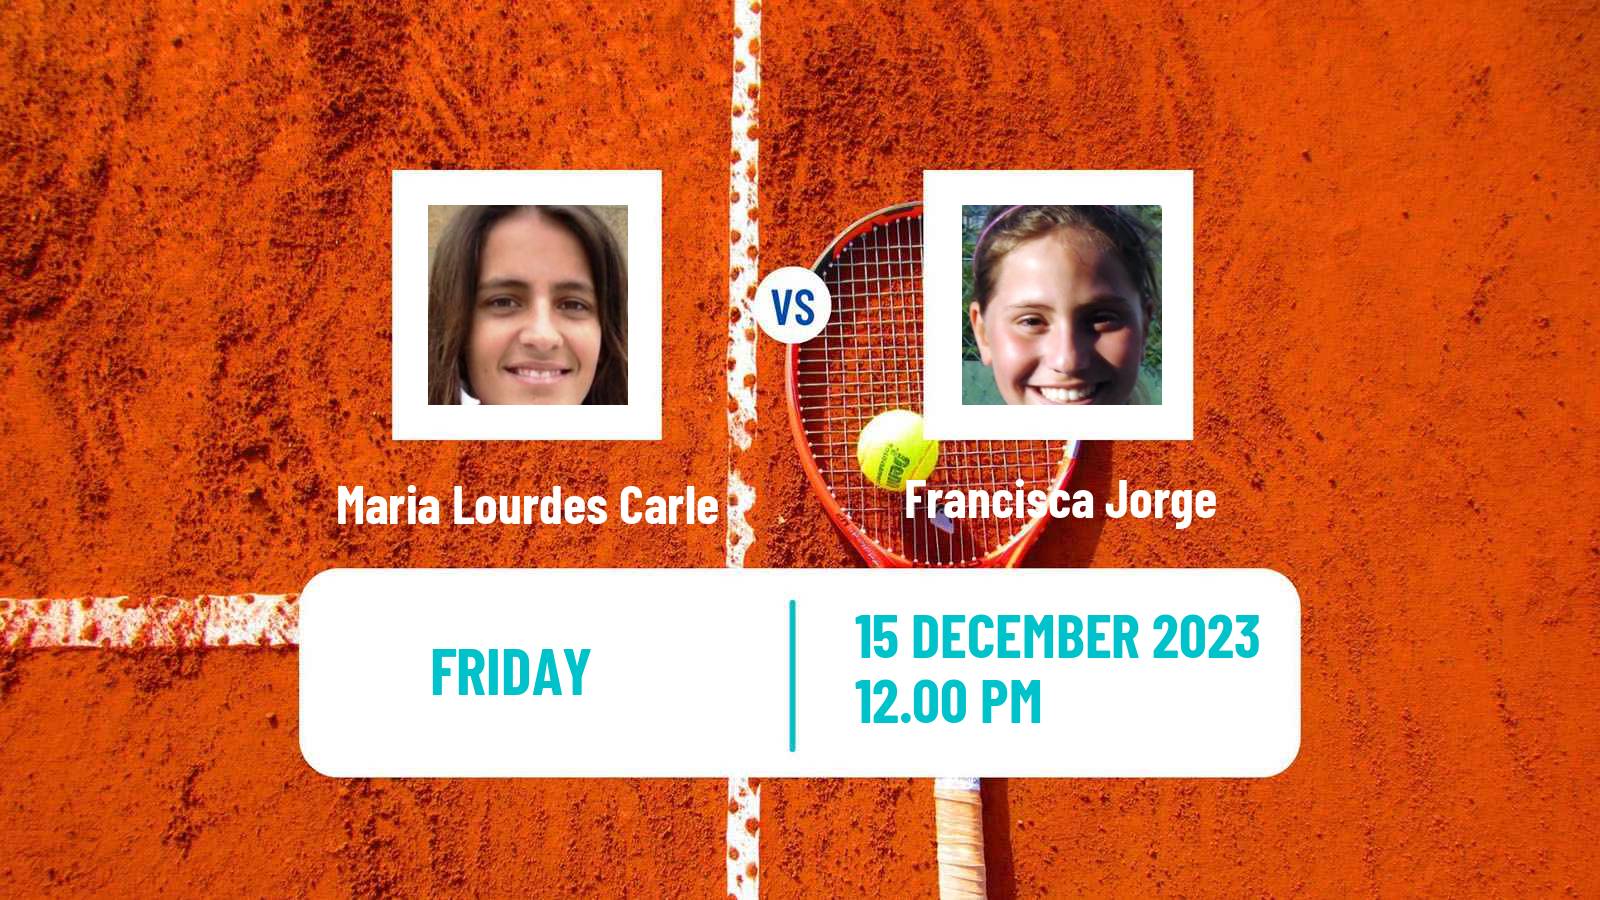 Tennis ITF W60 Vacaria Women Maria Lourdes Carle - Francisca Jorge